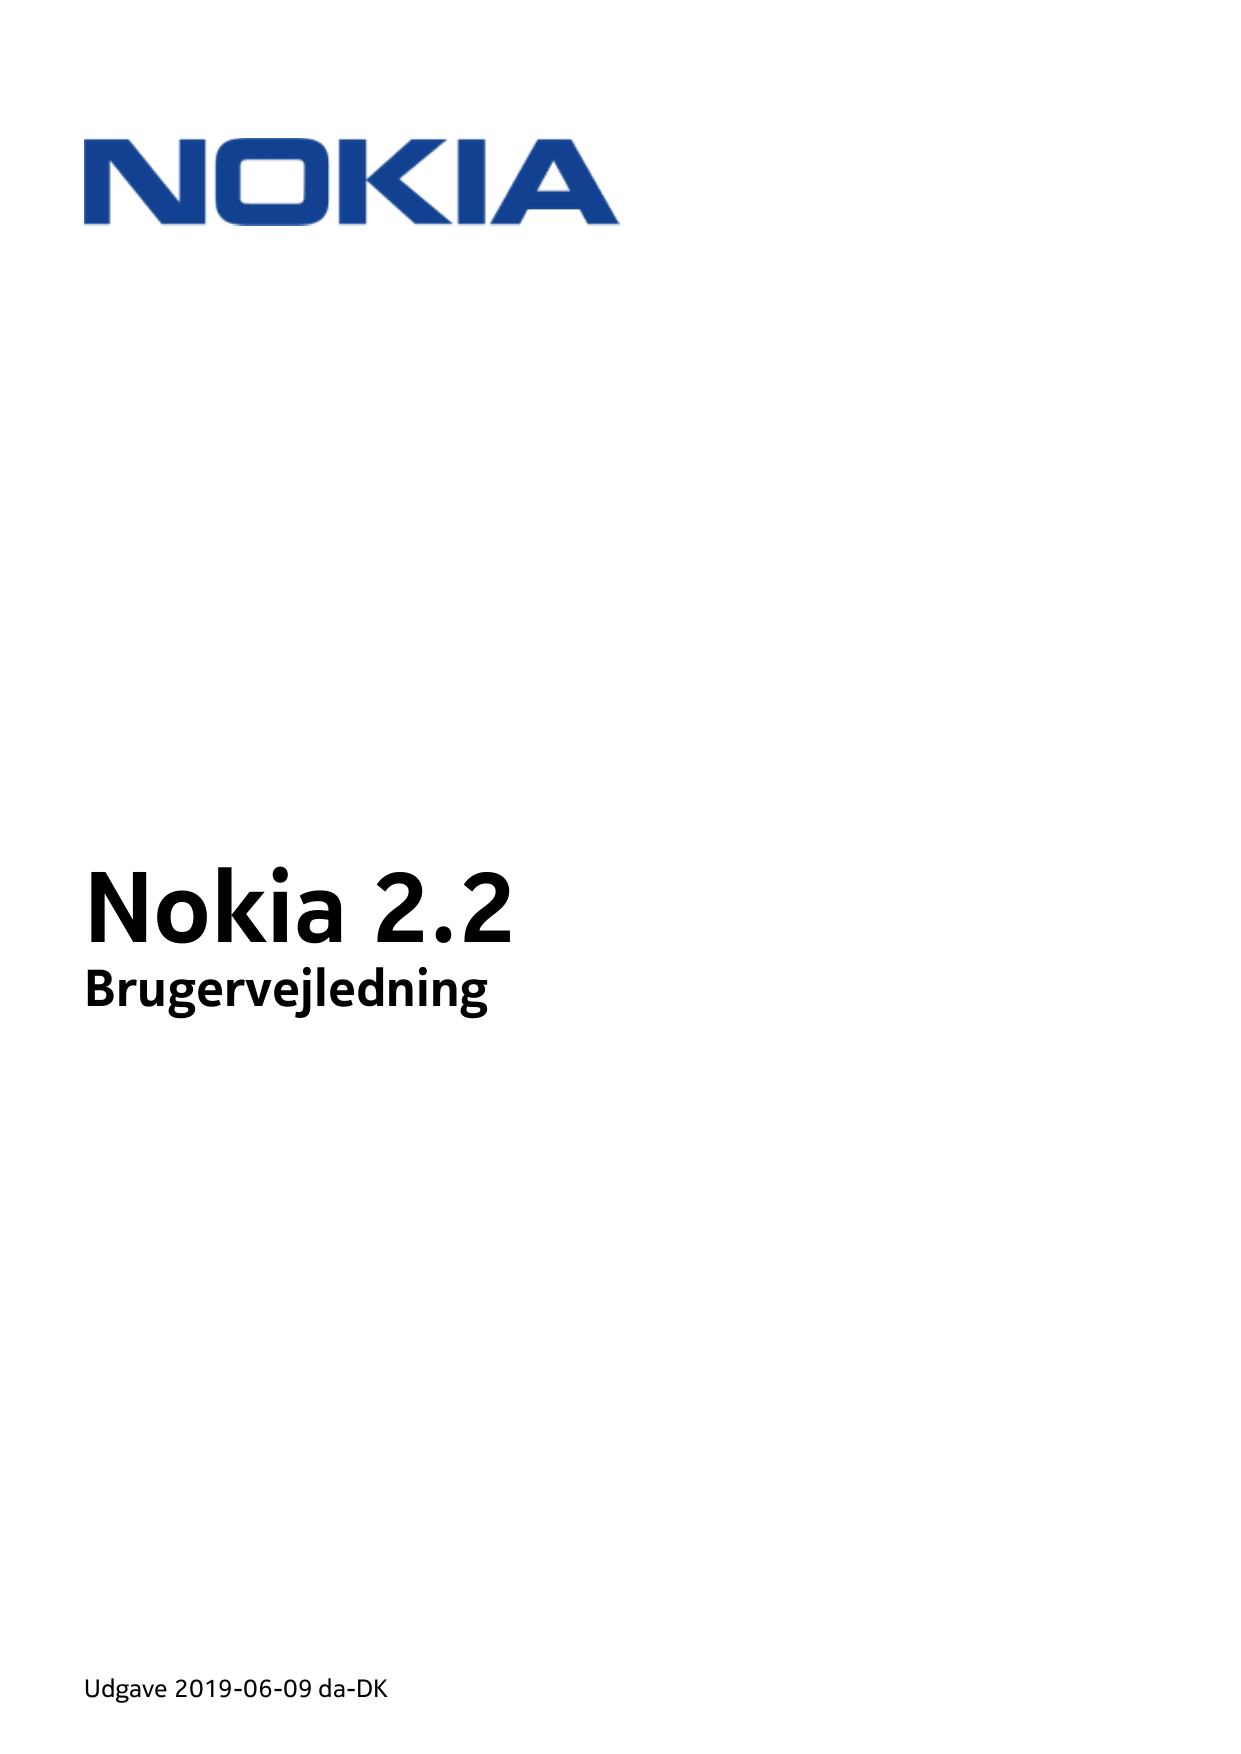 Nokia 2.2BrugervejledningUdgave 2019-06-09 da-DK